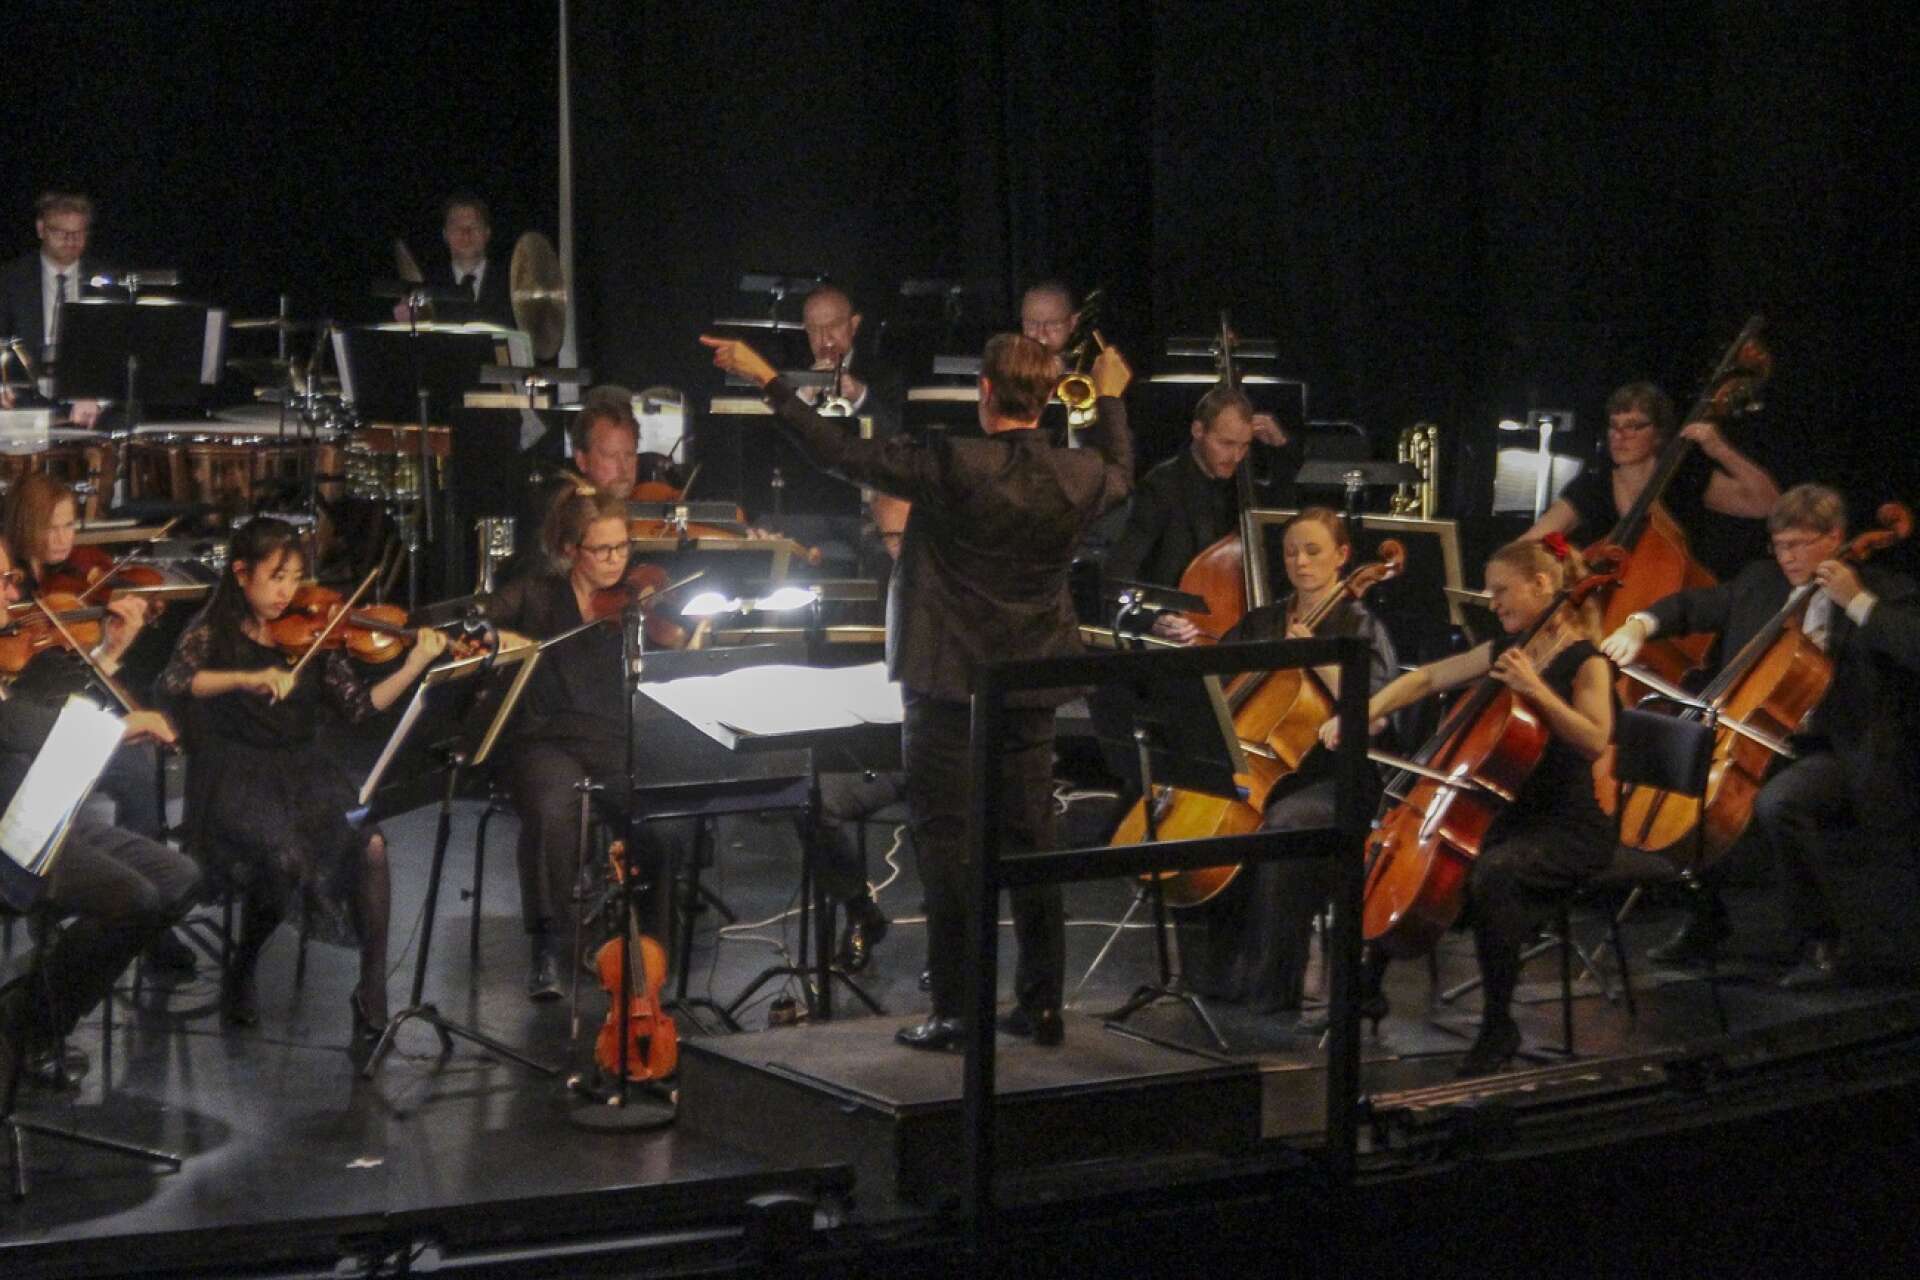 Wermland Operas trettondagskonsert i Medborgarhuset blev välbesökt.